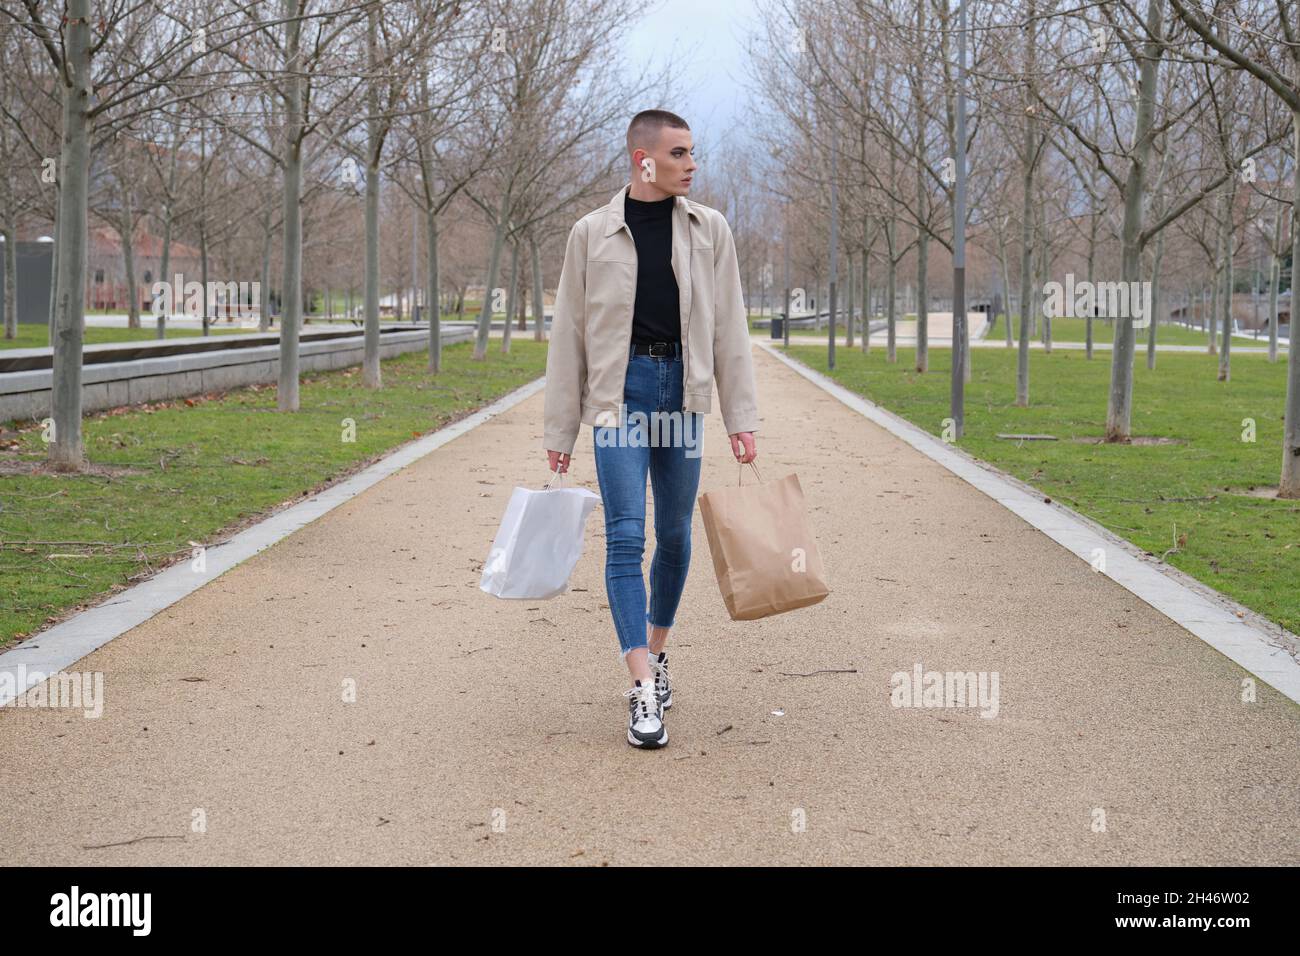 Un jeune homme portant du maquillage marche avec des sacs de shopping et de la musique. Banque D'Images